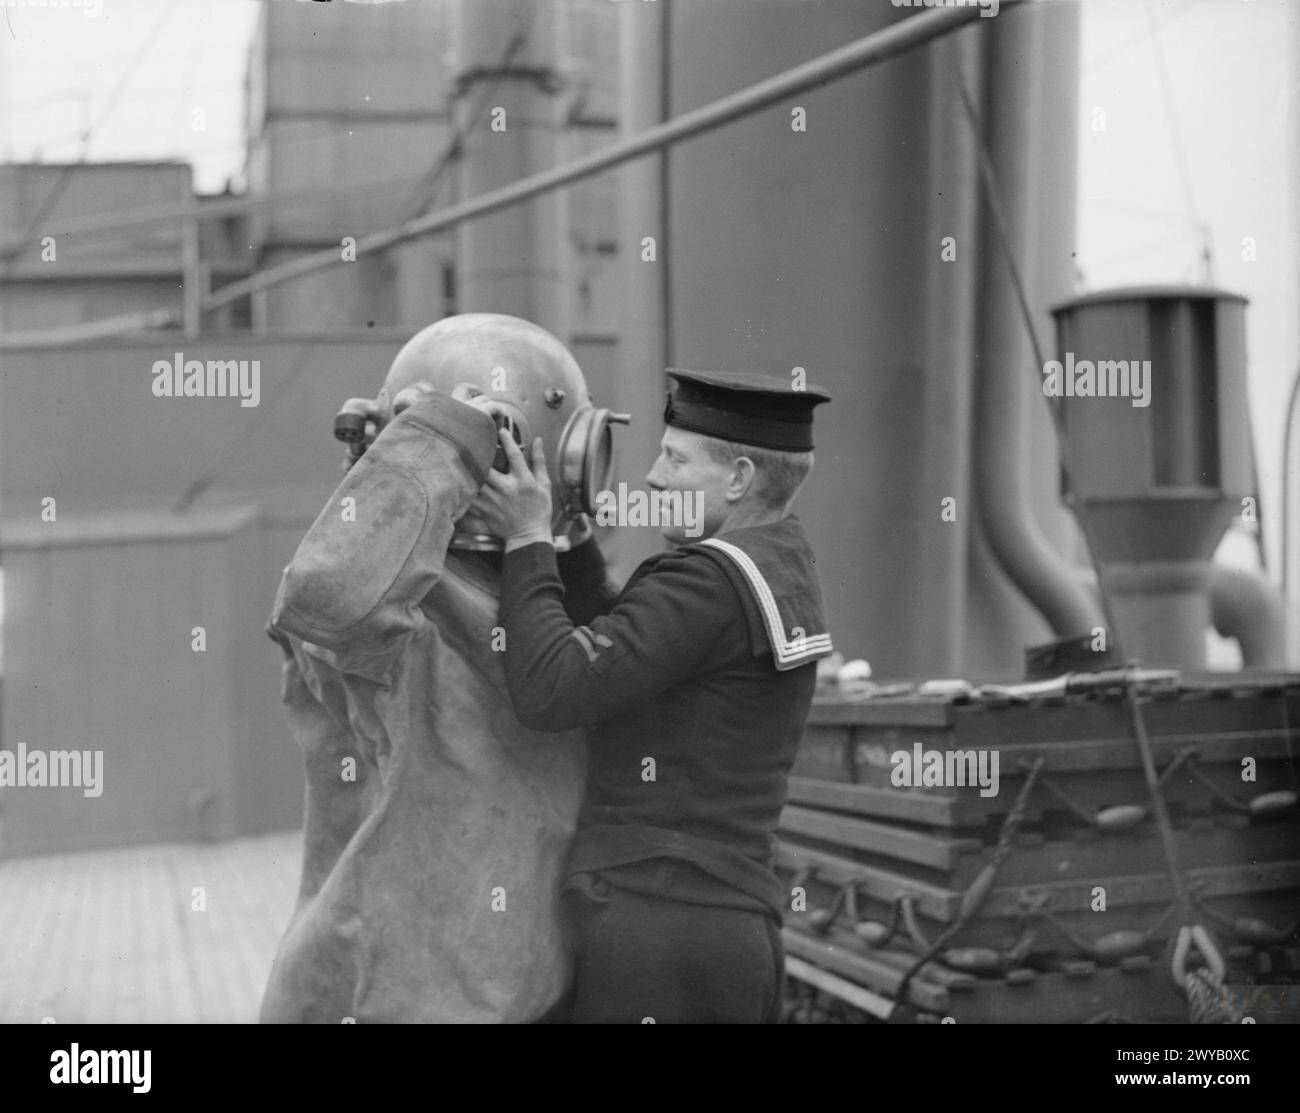 MONTAGGIO DEL SUBACQUEO. DICEMBRE 1941, HMS COCHRANE, ROSYTH, SCOZIA. - Subacqueo che indossa la sua tuta. , Foto Stock